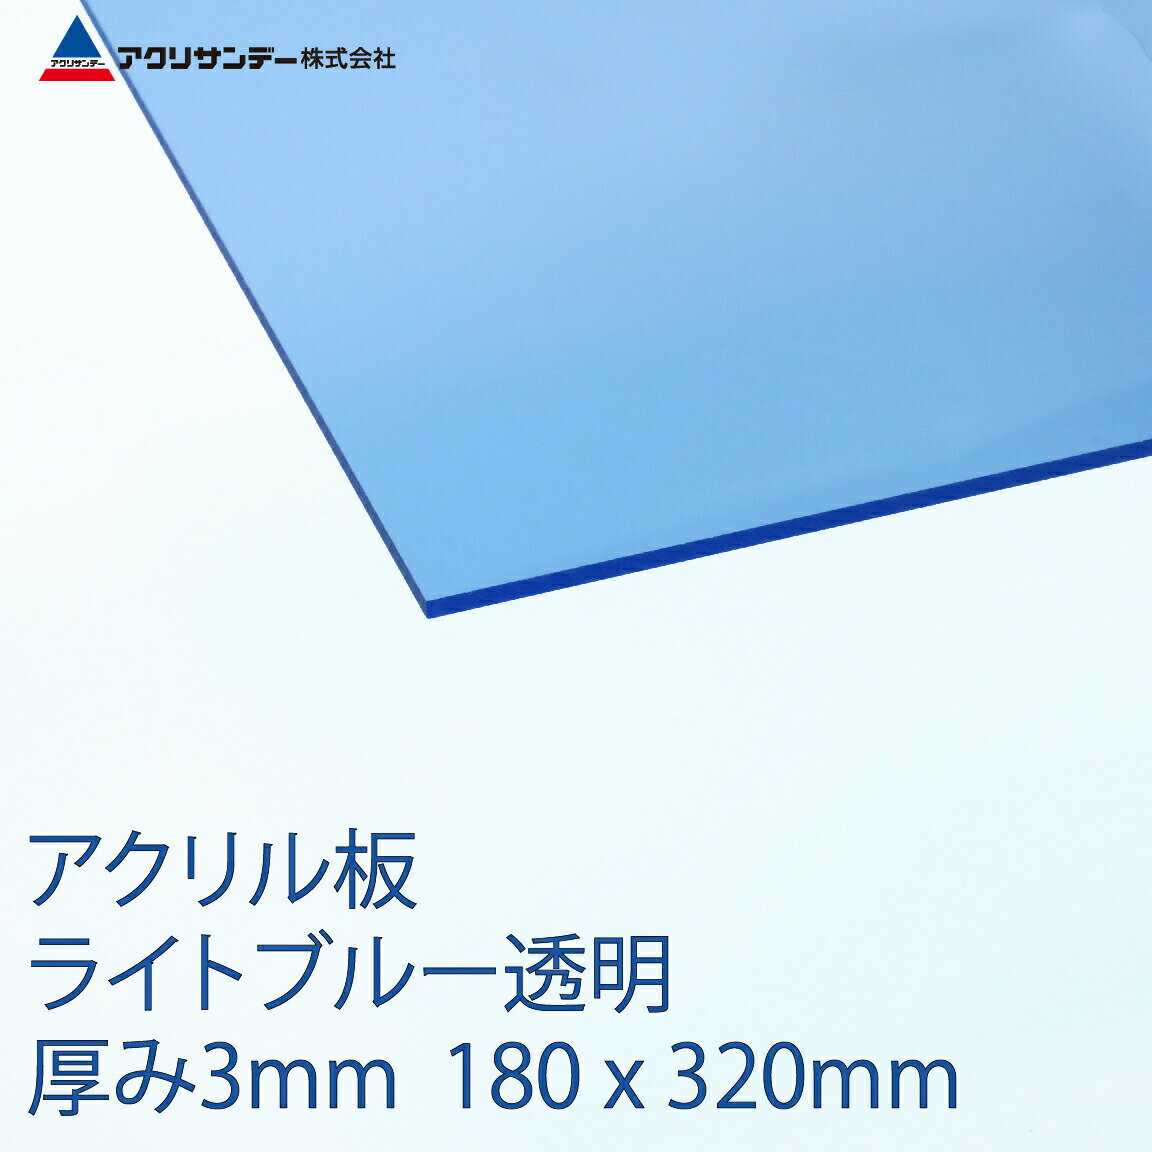 楽天市場 アクリサンデー アクリサンデー アクリサンデー板アクリル板 うす青透明ライトブルー透明 180 3 3mm 310 Ss 3 価格比較 商品価格ナビ